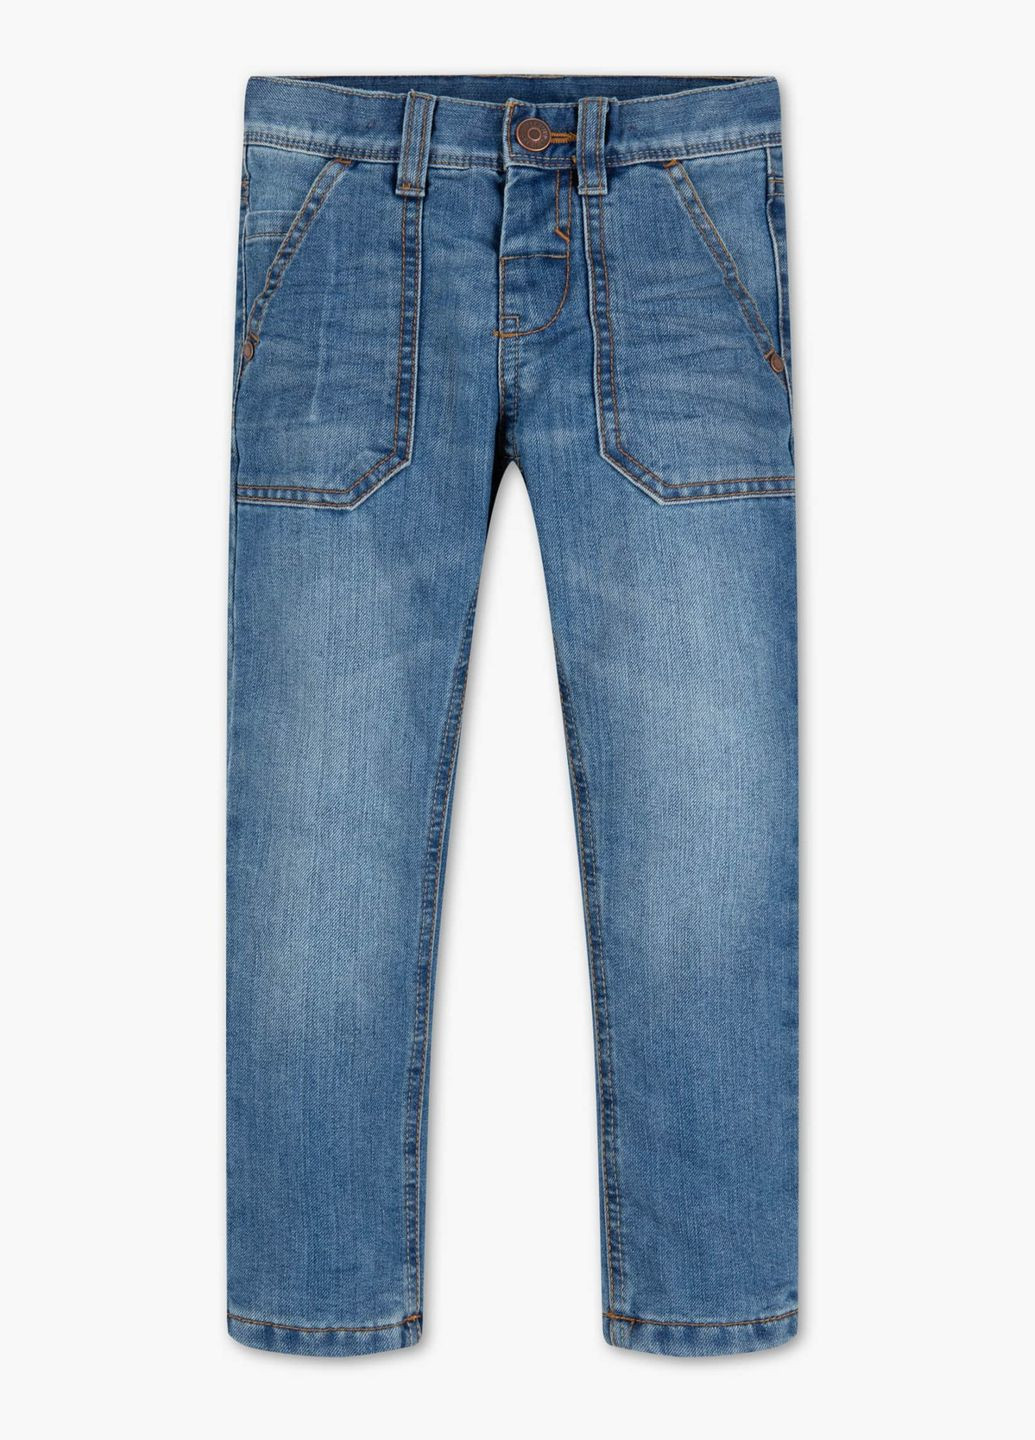 Голубые демисезонные джинсы для мальчика 116 размер голубые 2021348 C&A